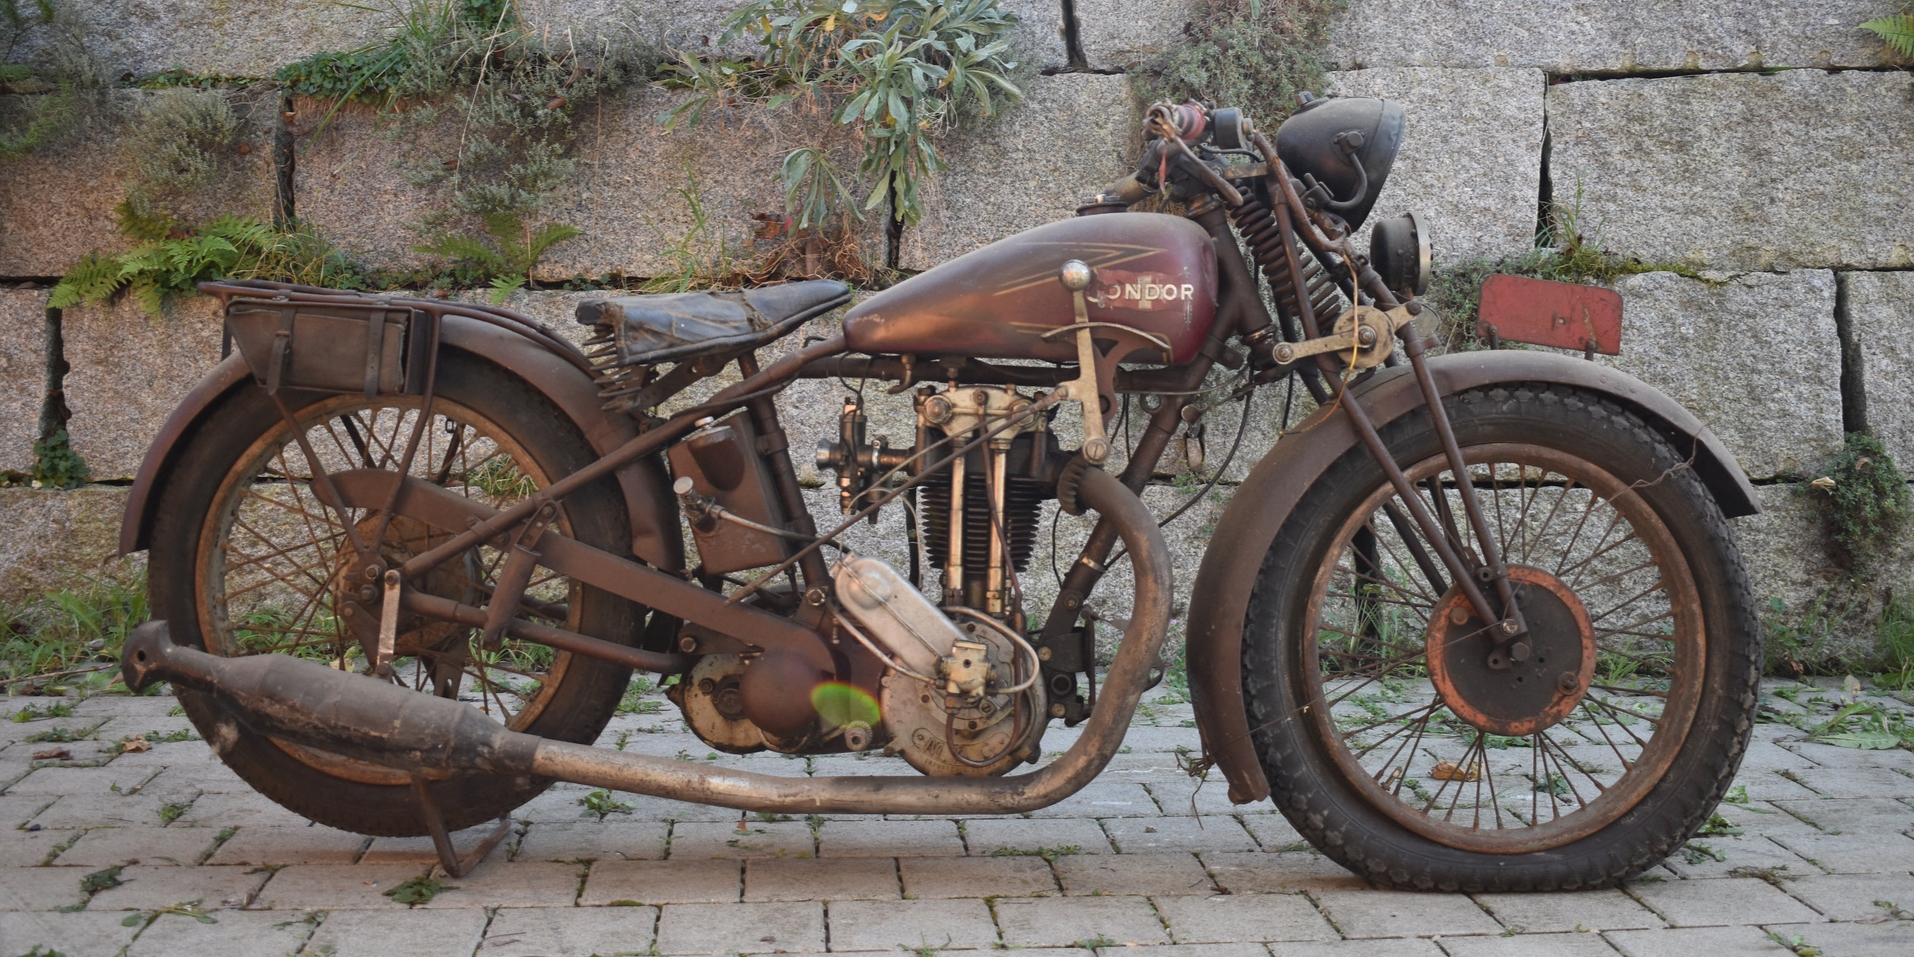 Seitenansicht eines braunen Condor Grand Sport 512 Motorrads aus dem Jahre 1929 mit einer Steinmauer im Hintergrund